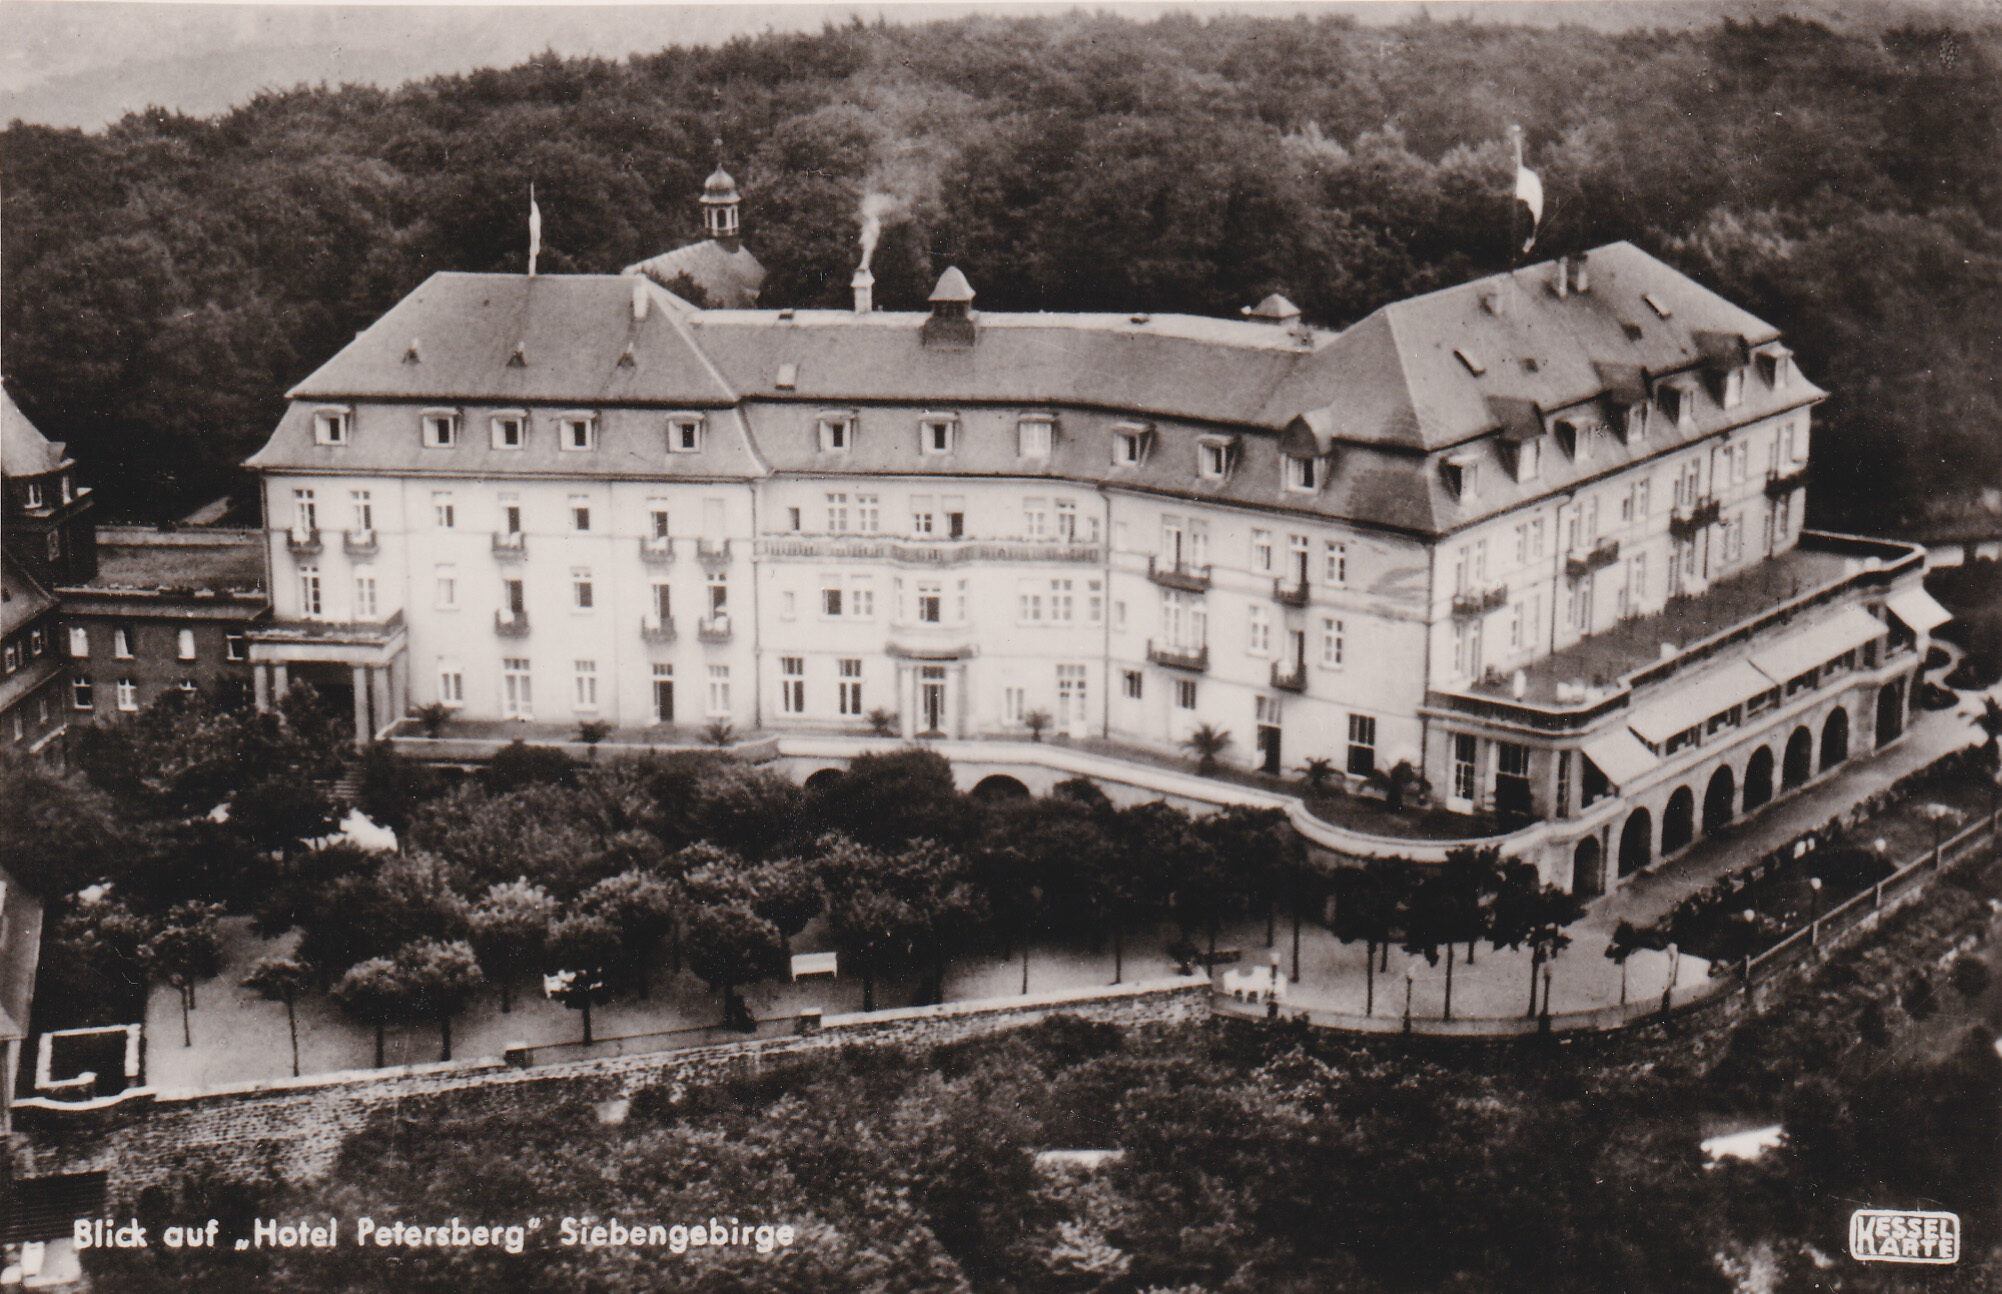 KURHOTEL AUF DEM PETERSBERG. Die Familie Nelles konnte ihr Hotel auf dem Petersberg nicht halten, eine Nachfolgegesellschaft ging in Konkurs. Ferdinand Mülhens erwarb 1911 das alte Hotel und ließ es zu einem Kurhotel umbauen. Die Eröffnung fand 1914 statt.